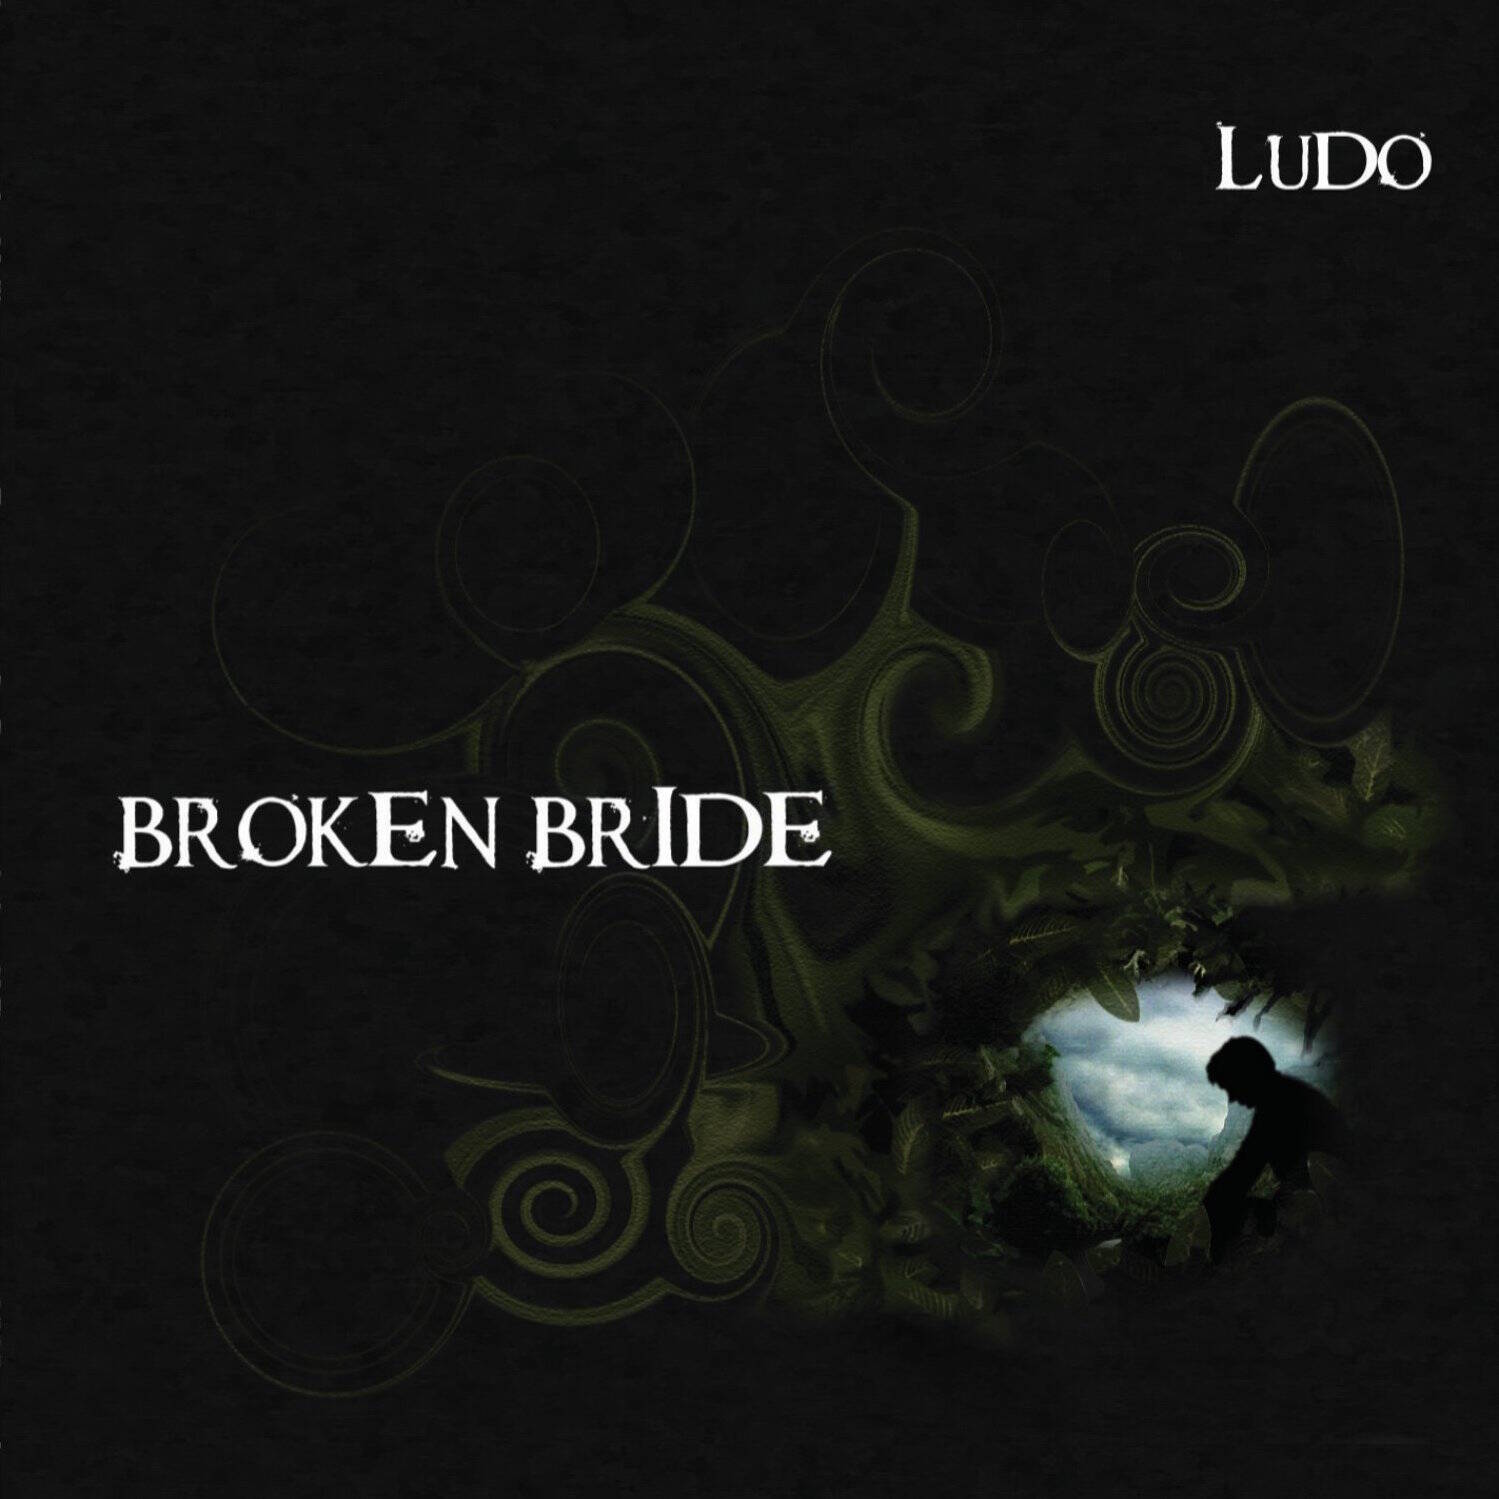 Broken Bride's album art